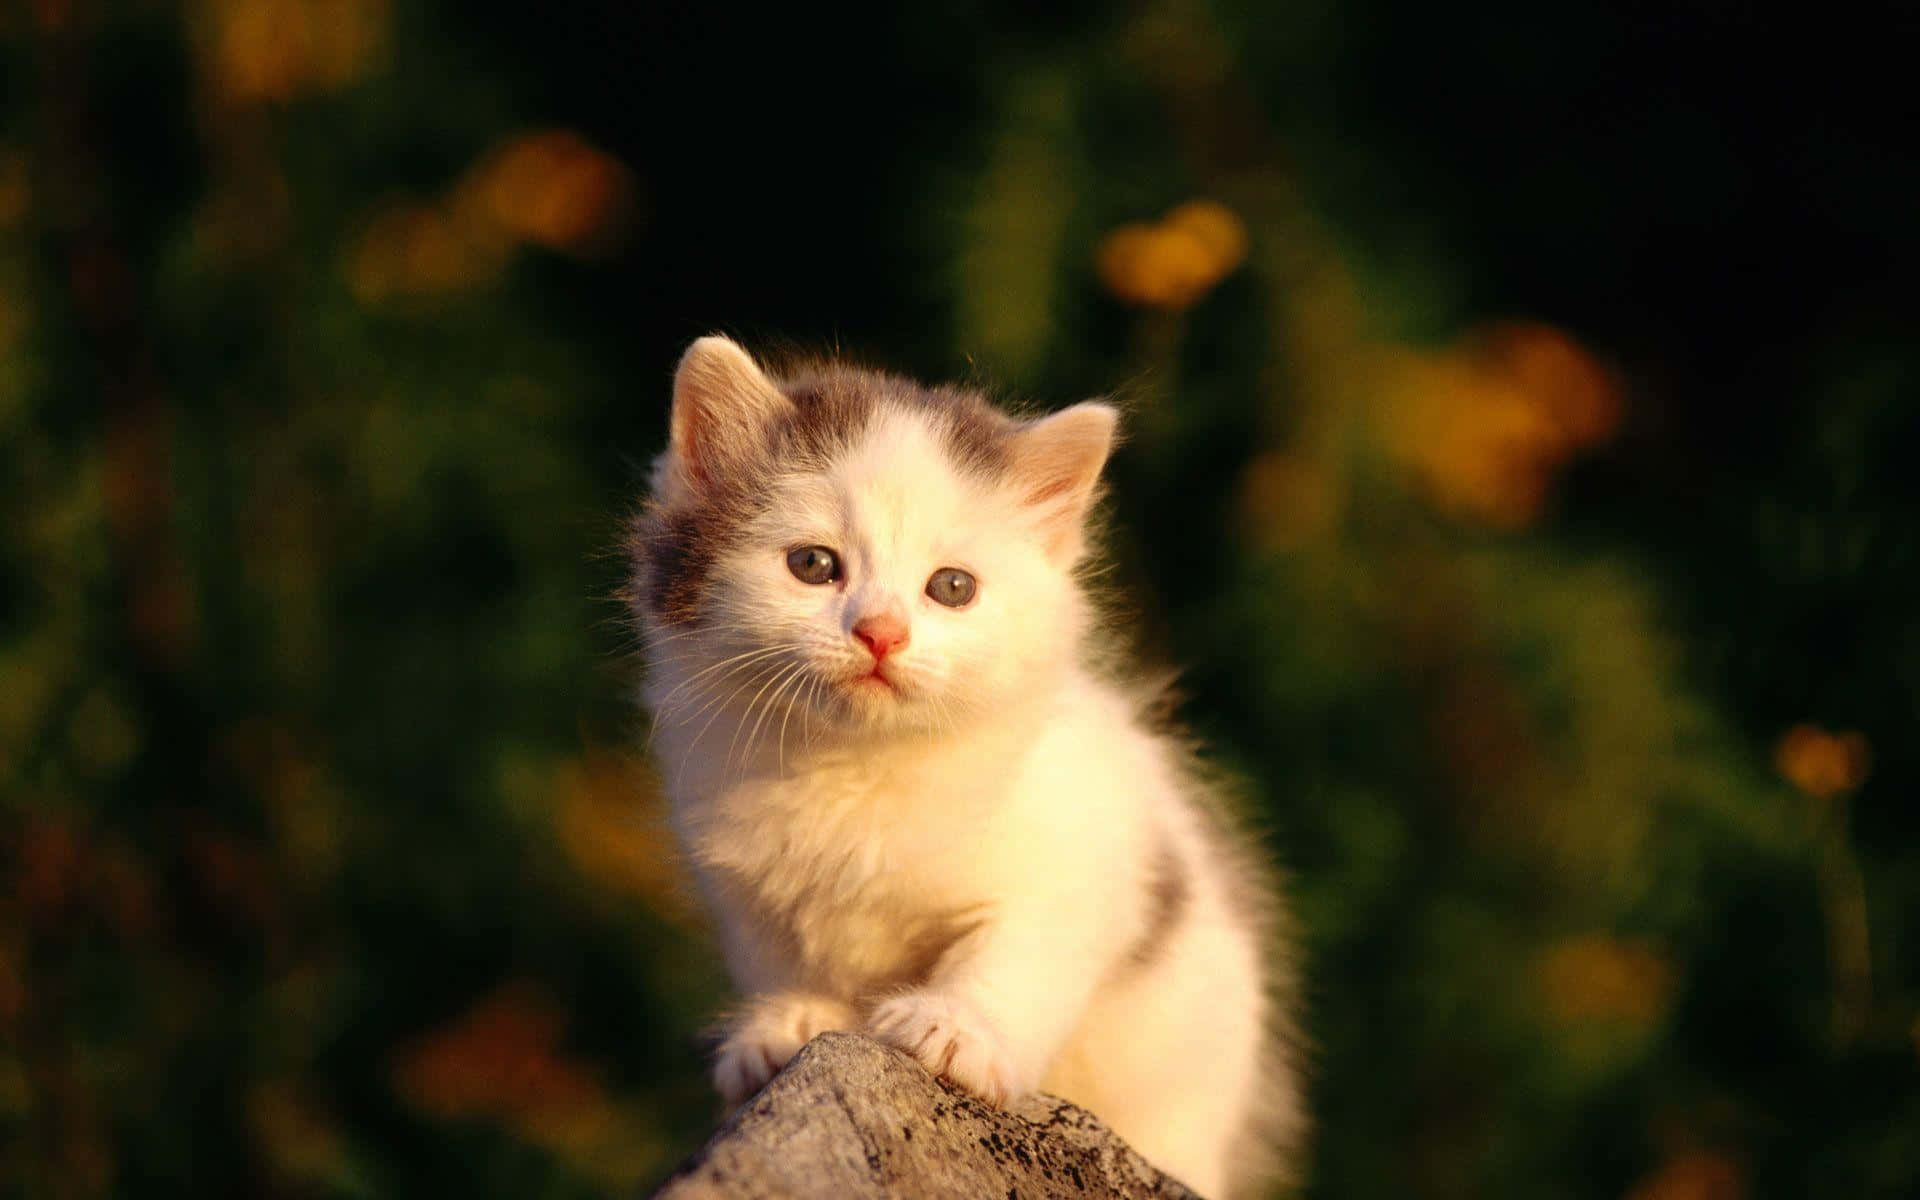 Sötbild På En Vit Turkisk Katt